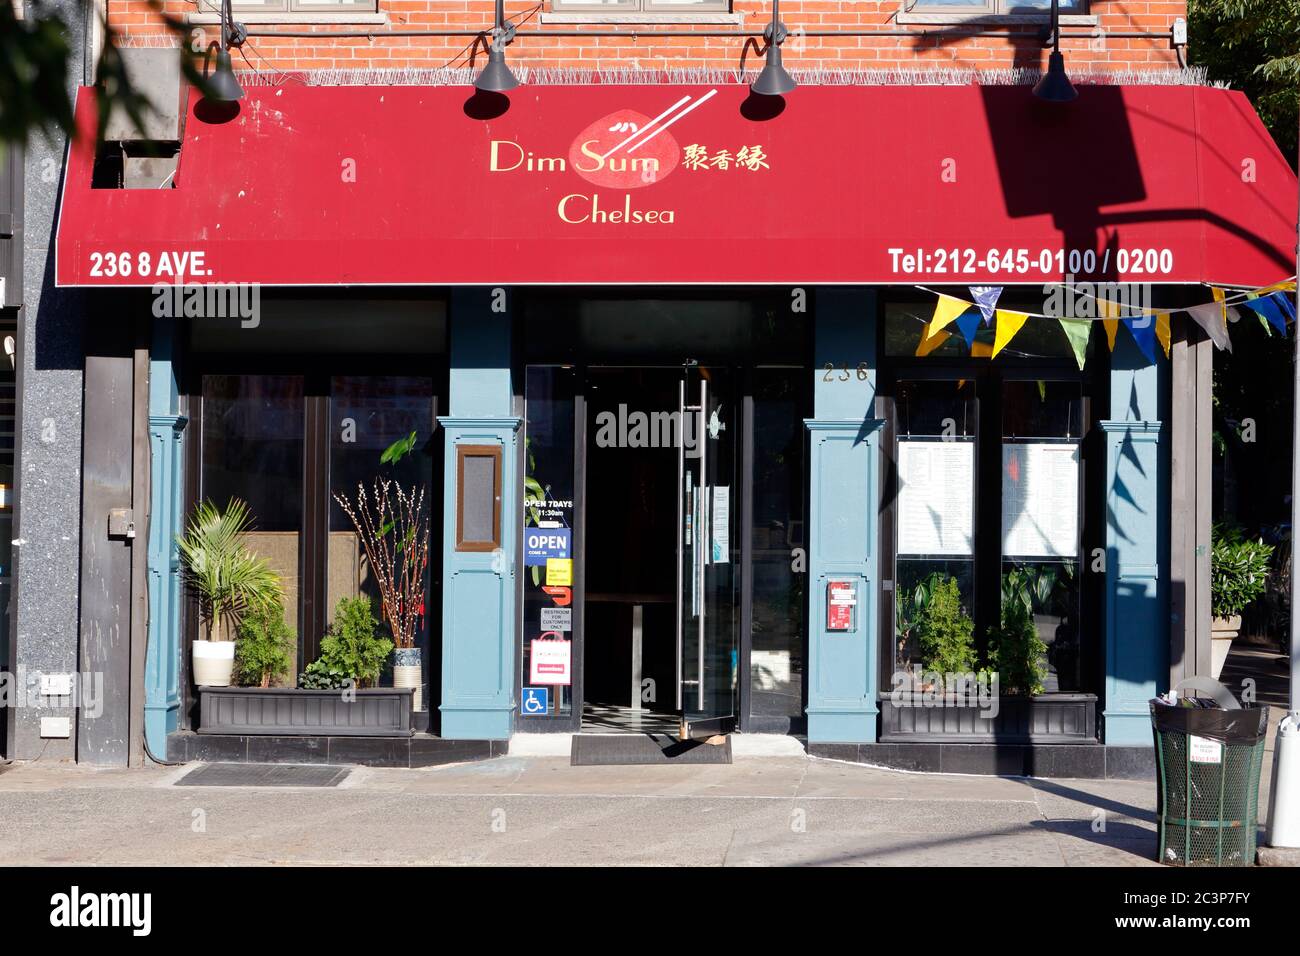 DIM sum Chelsea, 236 8th Ave, New York, NY. Façade extérieure d'un restaurant chinois dans le quartier Chelsea de Manhattan. Banque D'Images